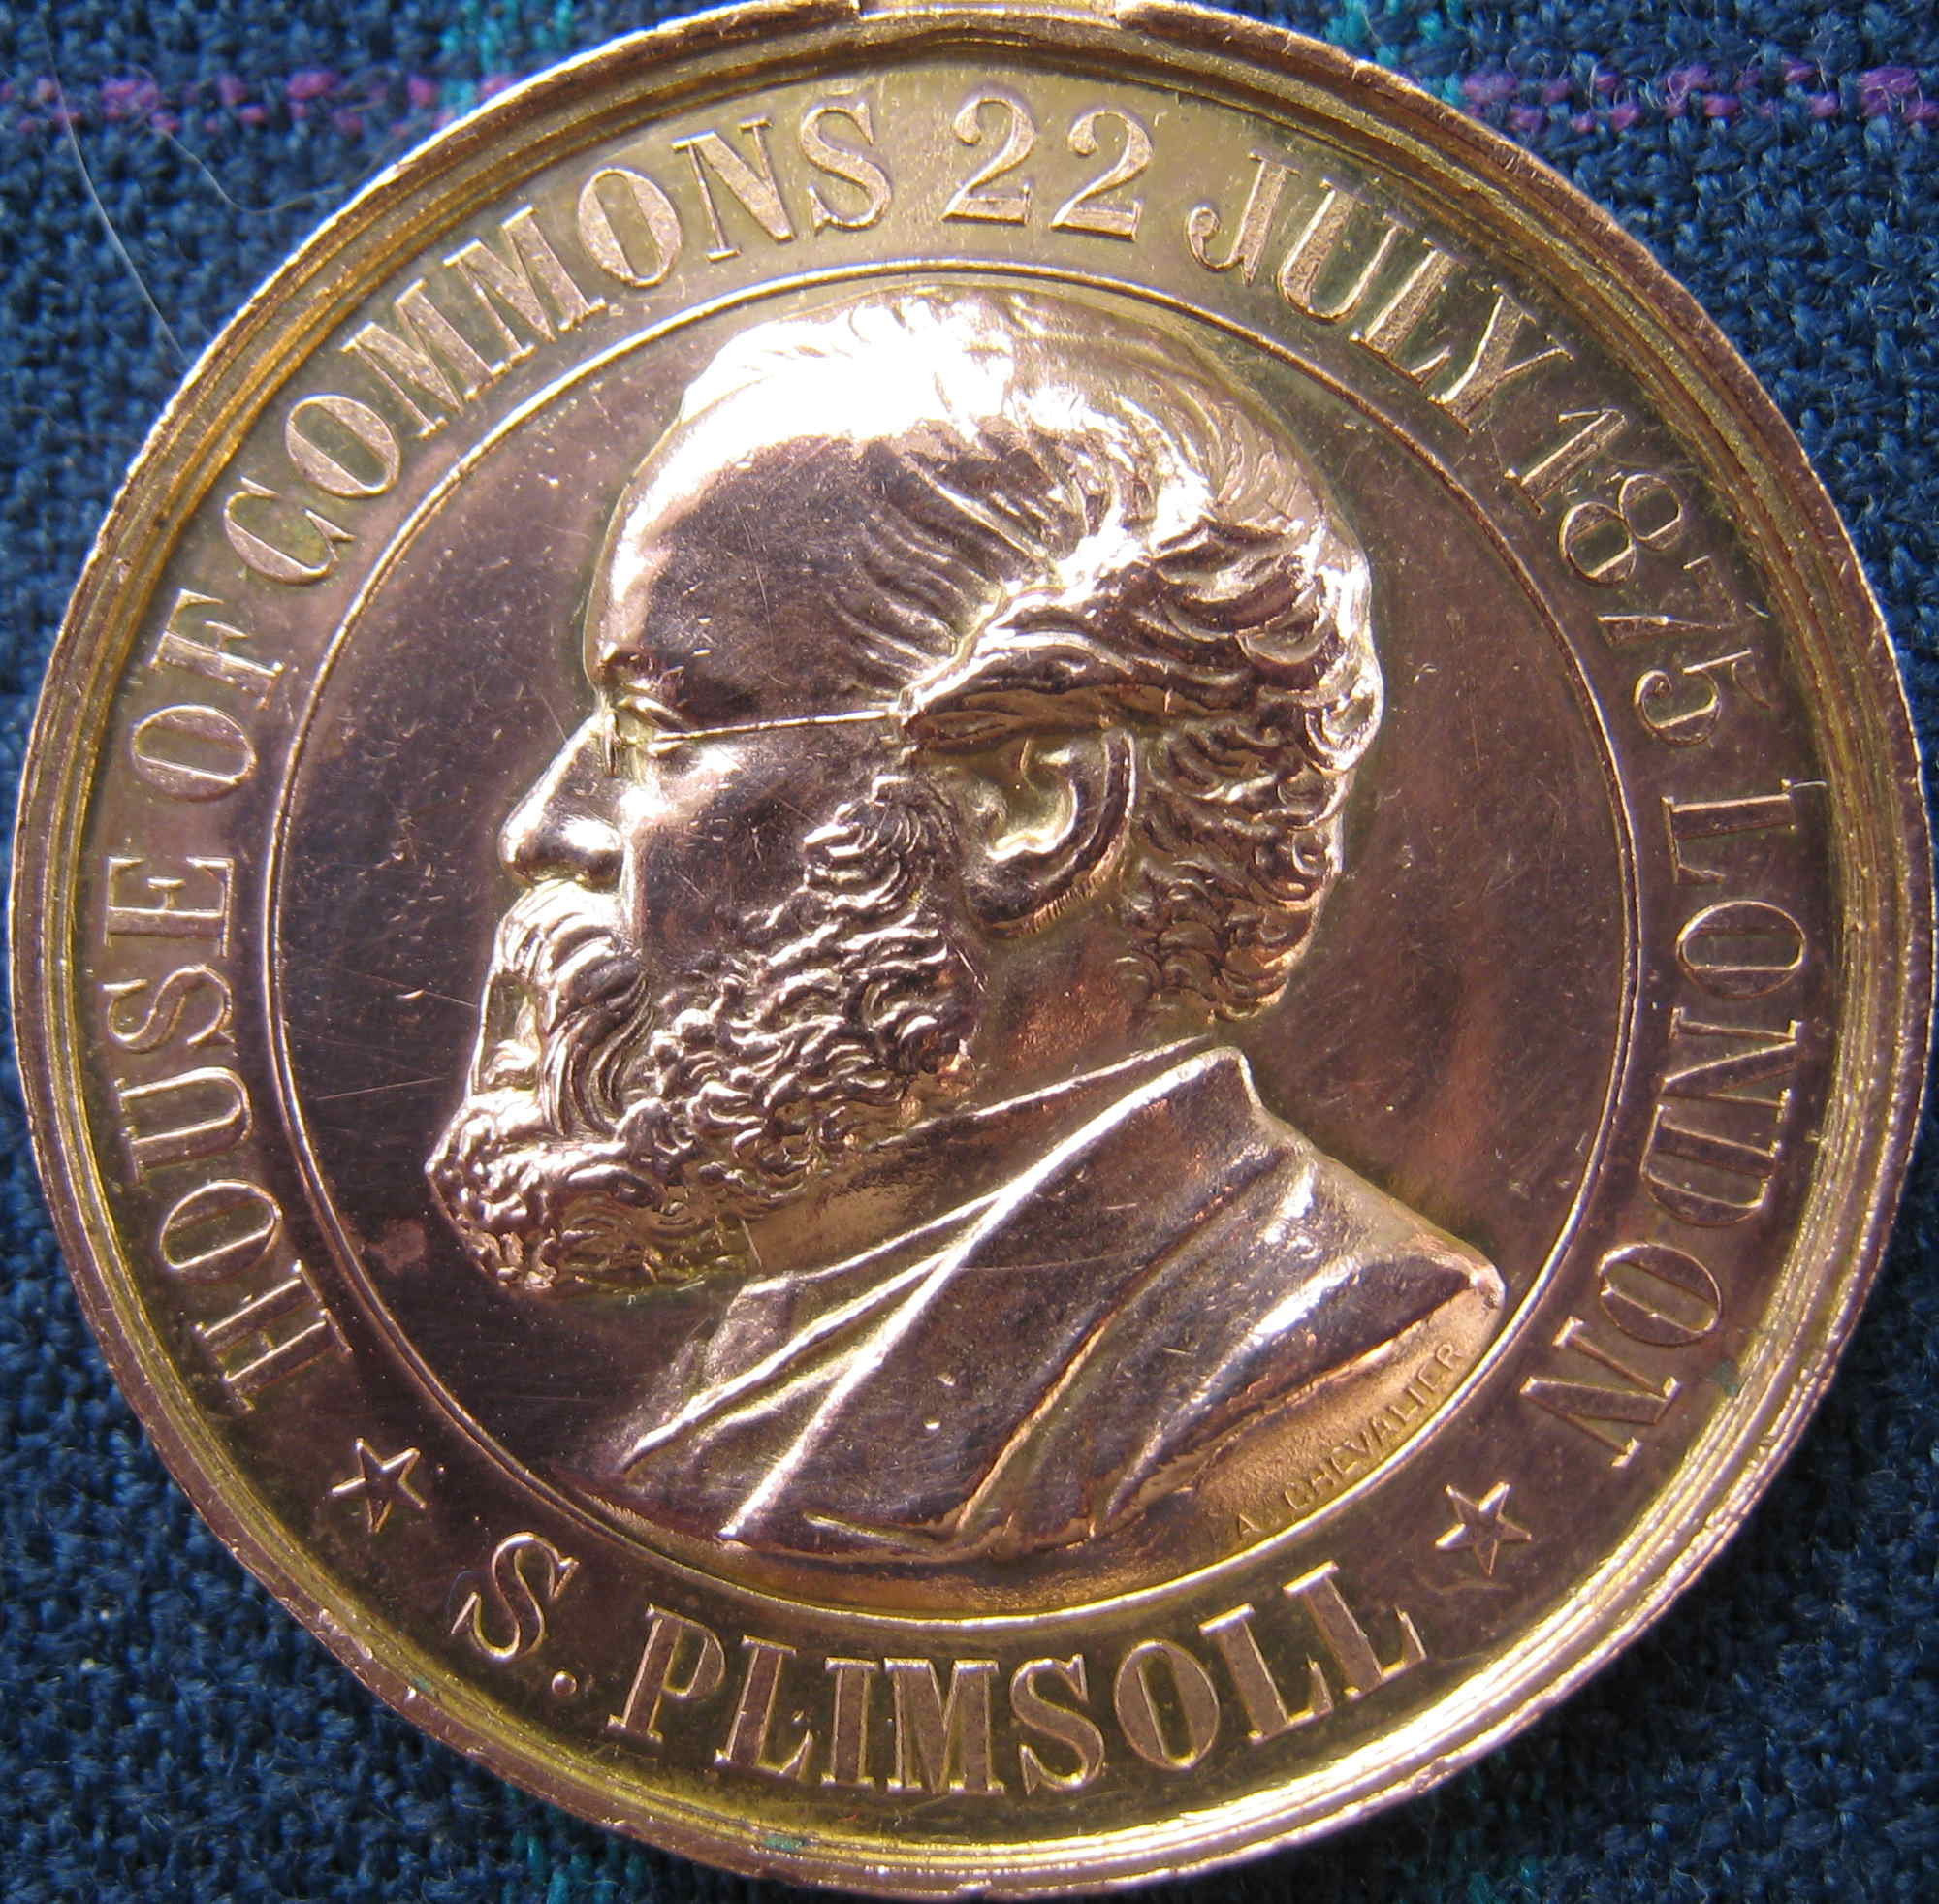 Samuel plimsoll laudatory medal